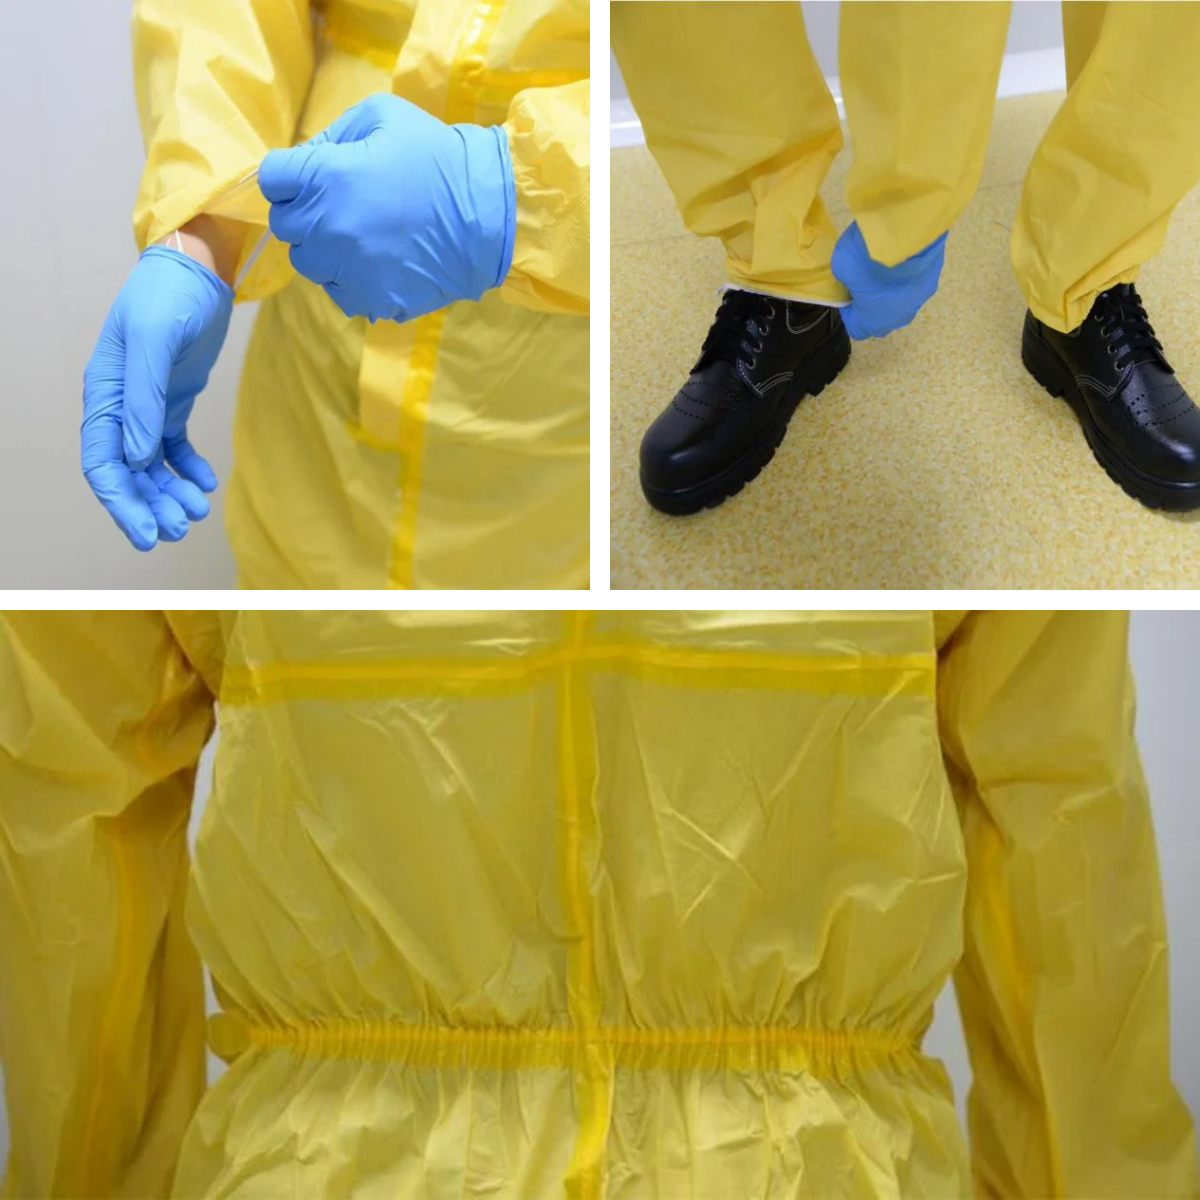 Disposable Chemical protective suit show details